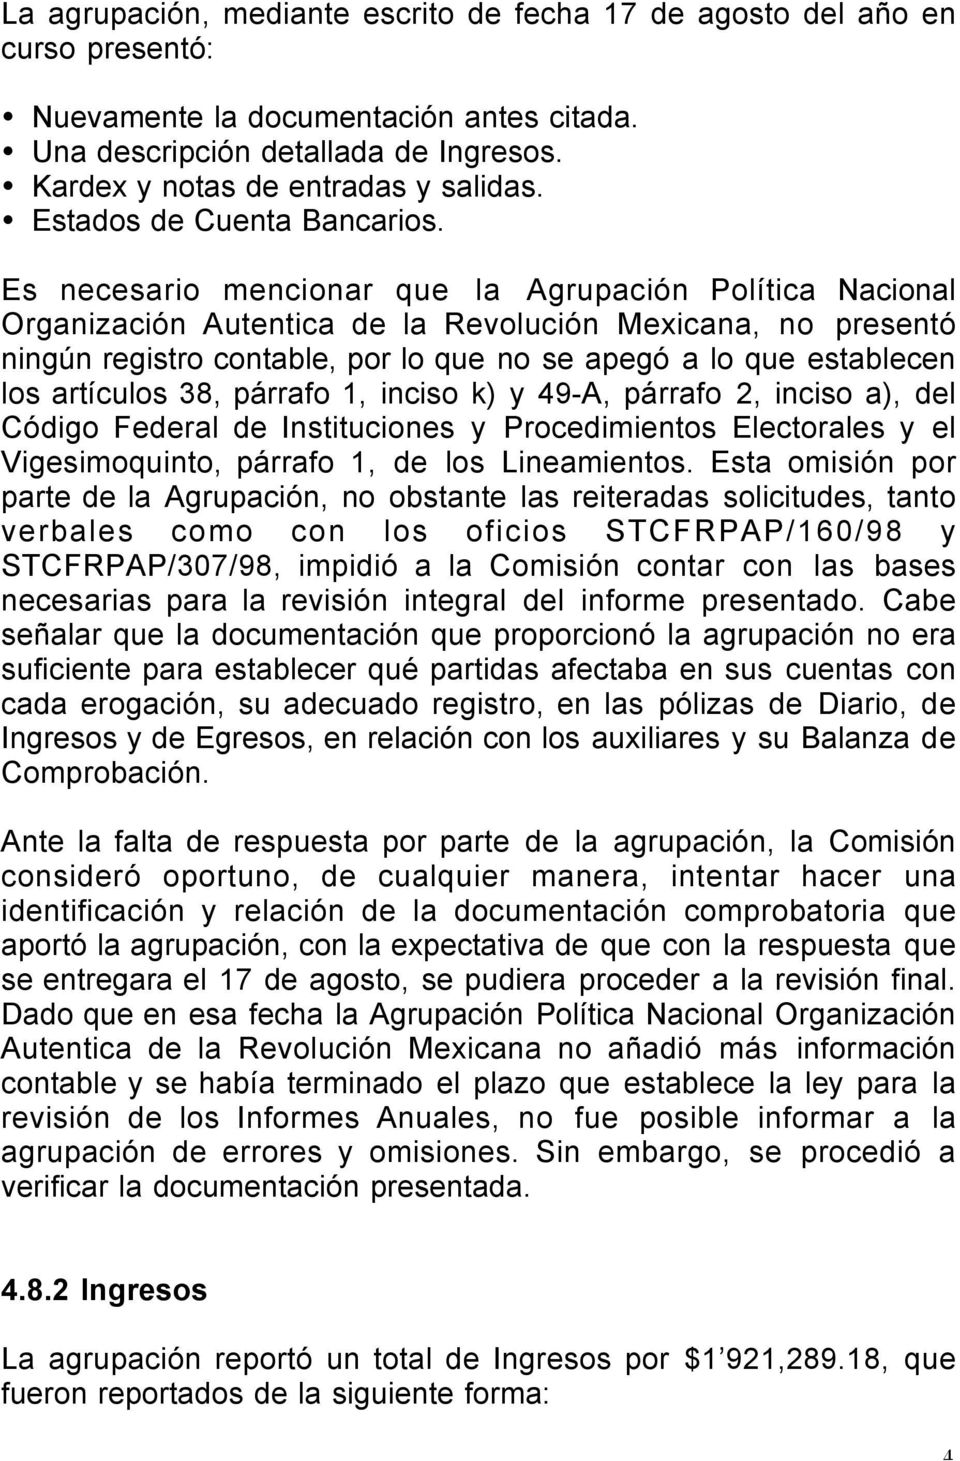 Es necesario mencionar que la Agrupación Política Nacional Organización Autentica de la Revolución Mexicana, no presentó ningún registro contable, por lo que no se apegó a lo que establecen los